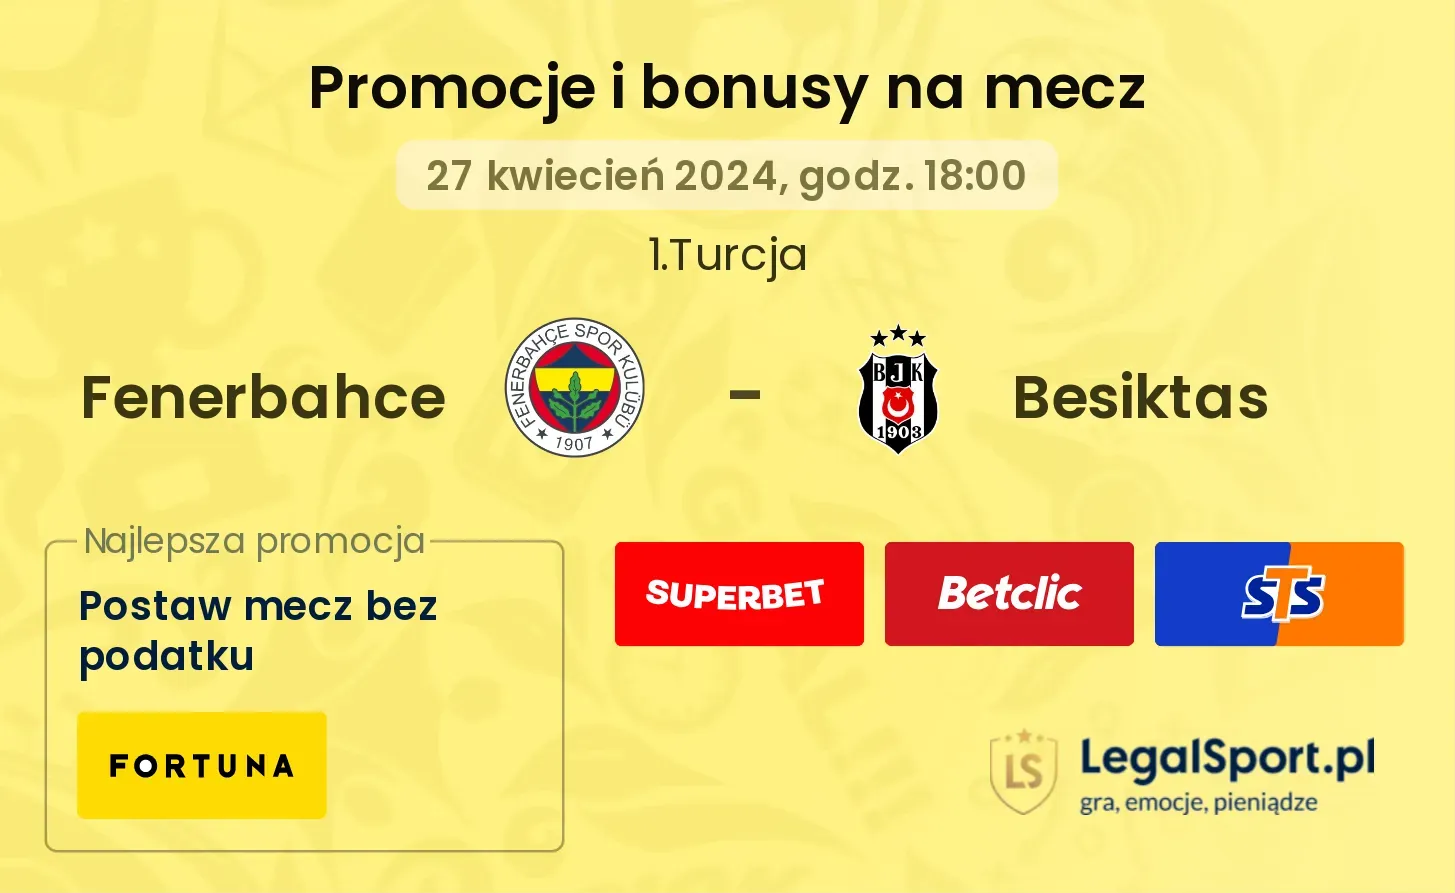 Fenerbahce - Besiktas promocje bonusy na mecz